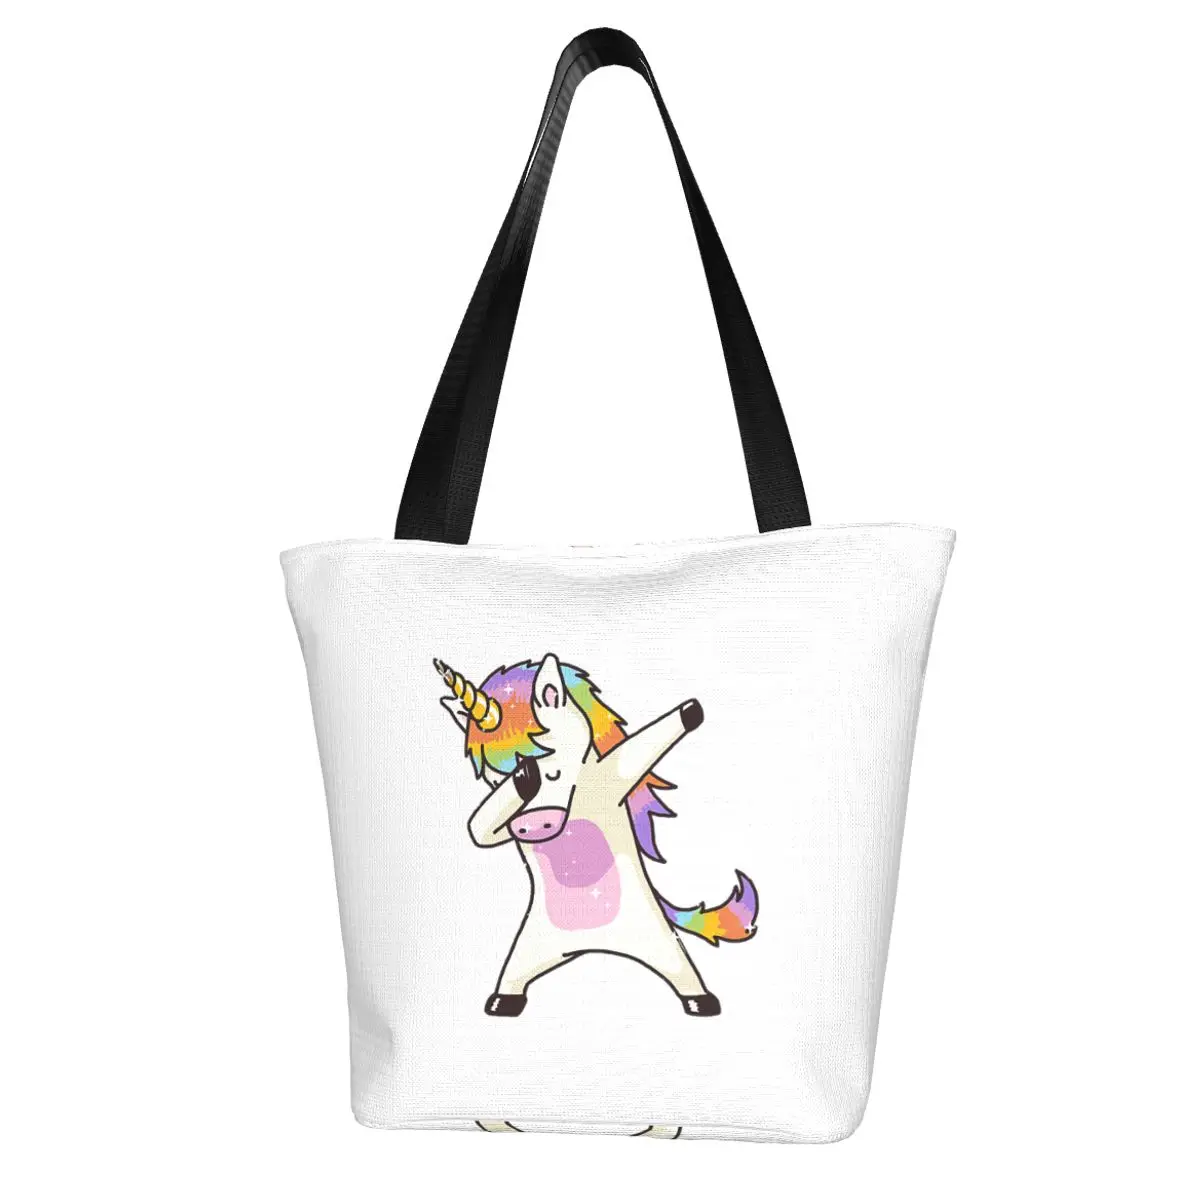 Dab Dab Dance Magic Unicorn Shopping Bag Aesthetic Cloth Outdoor Handbag Female Fashion Bags